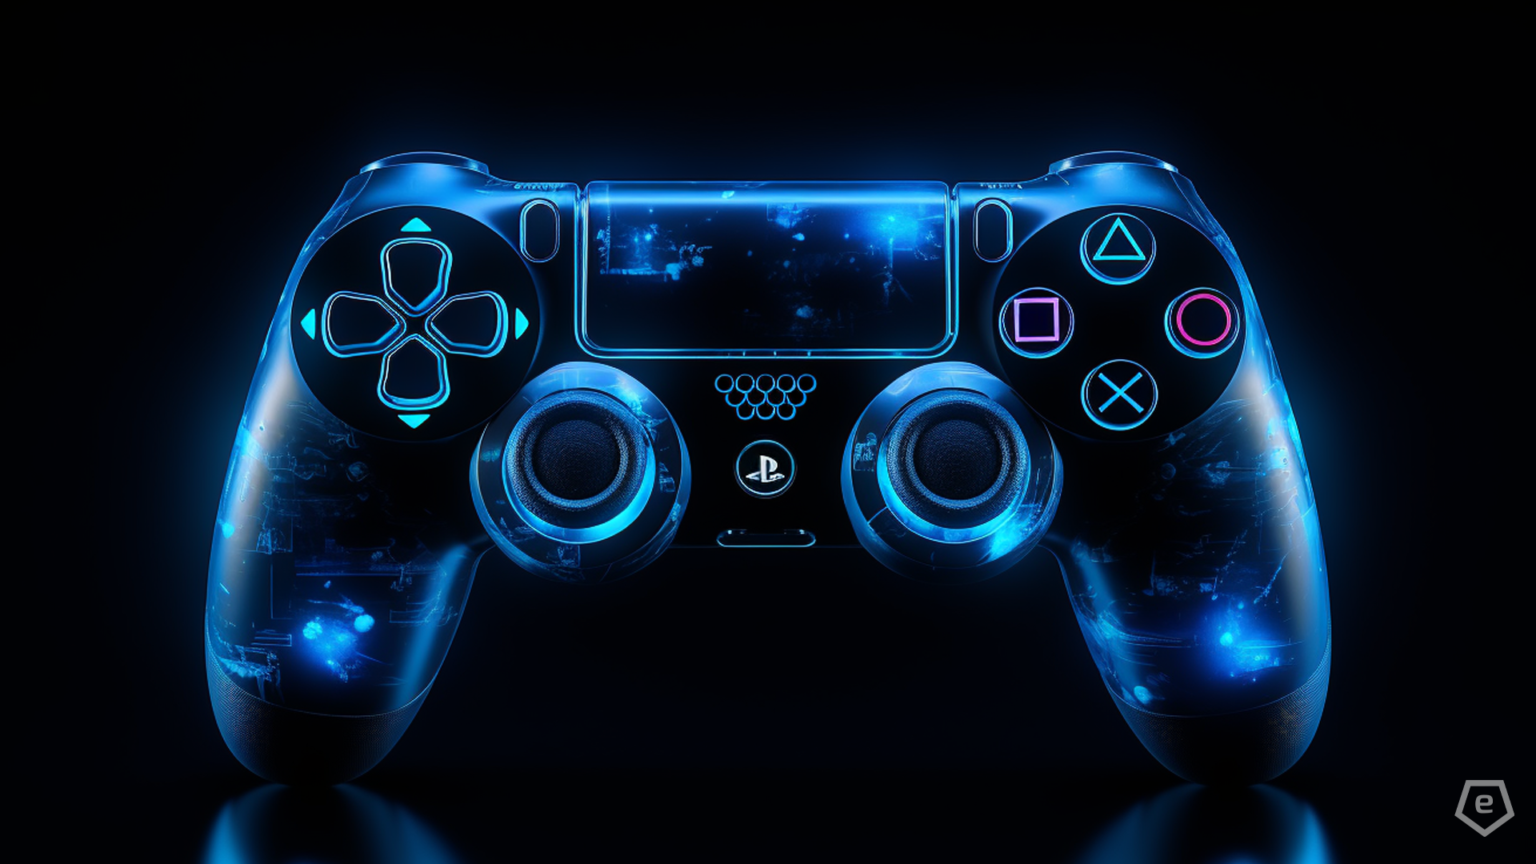 Neuer PS5-Controller geleakt: DualSense V2 mit 12 Stunden Akkulaufzeit. Sony überrascht die Fans. Was steckt dahinter?